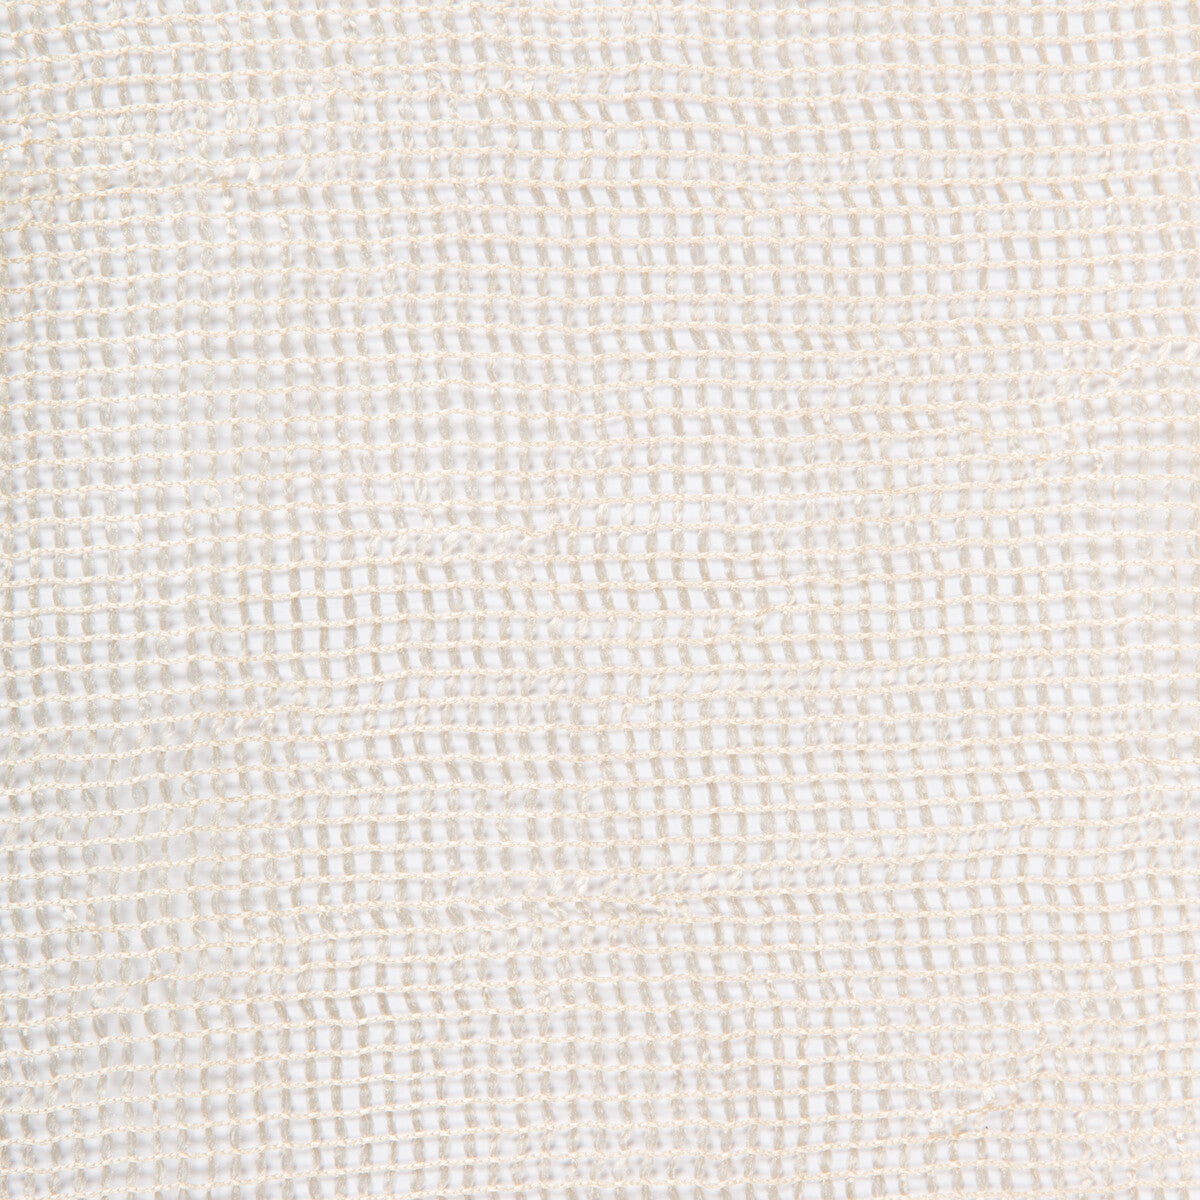 Kravet Basics fabric in 4323-116 color - pattern 4323.116.0 - by Kravet Basics